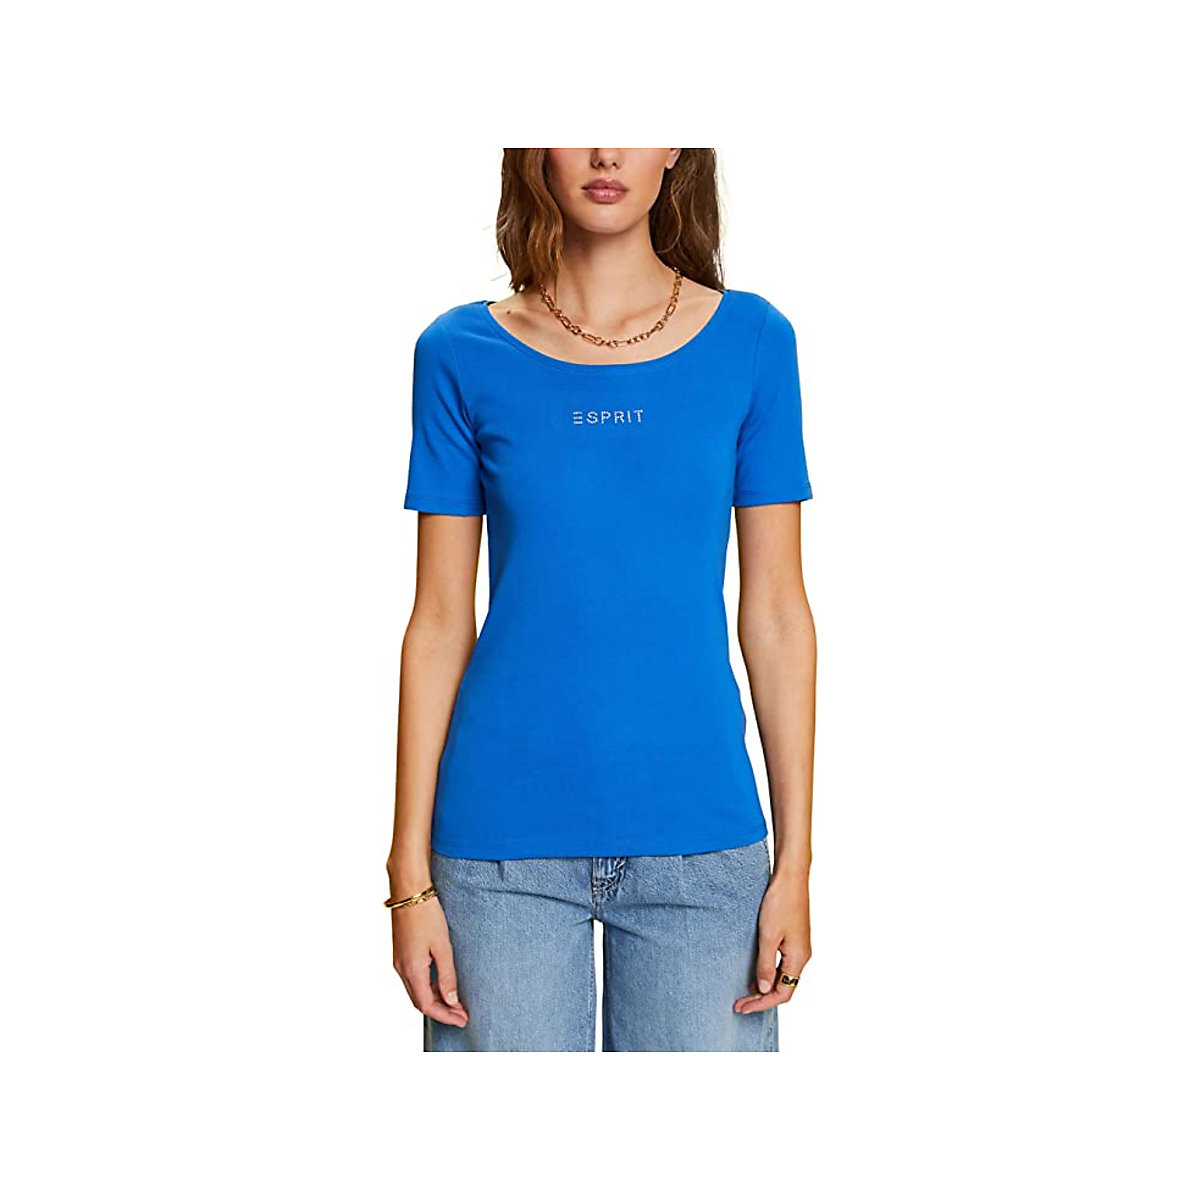 ESPRIT T-Shirt für Mädchen hellblau